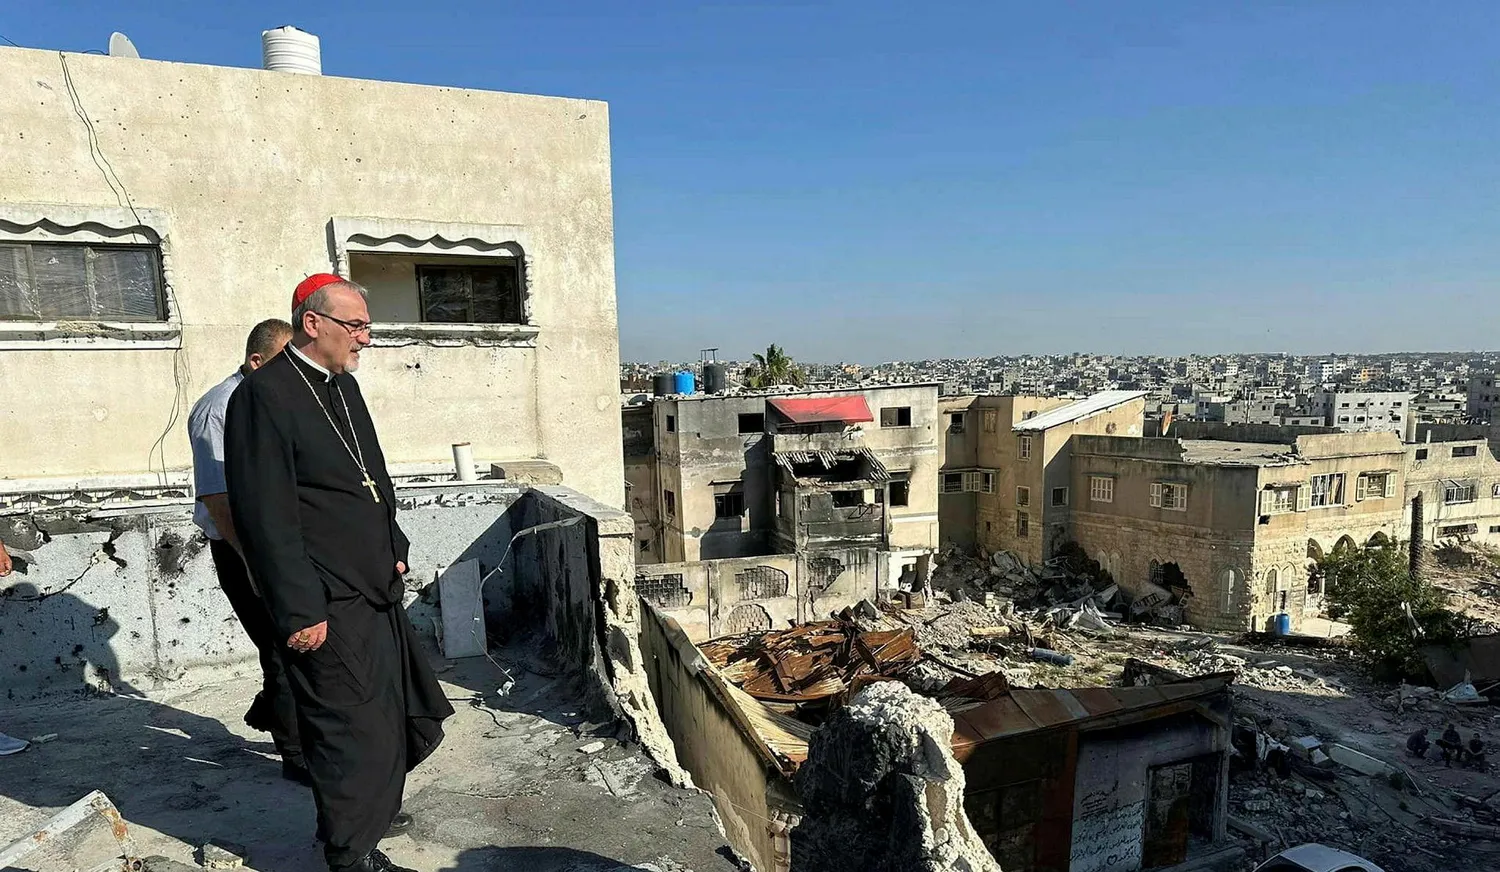 A gázai keresztények több mint fele elhagyta az övezetet, és az egyház félti a közösség jövőjét